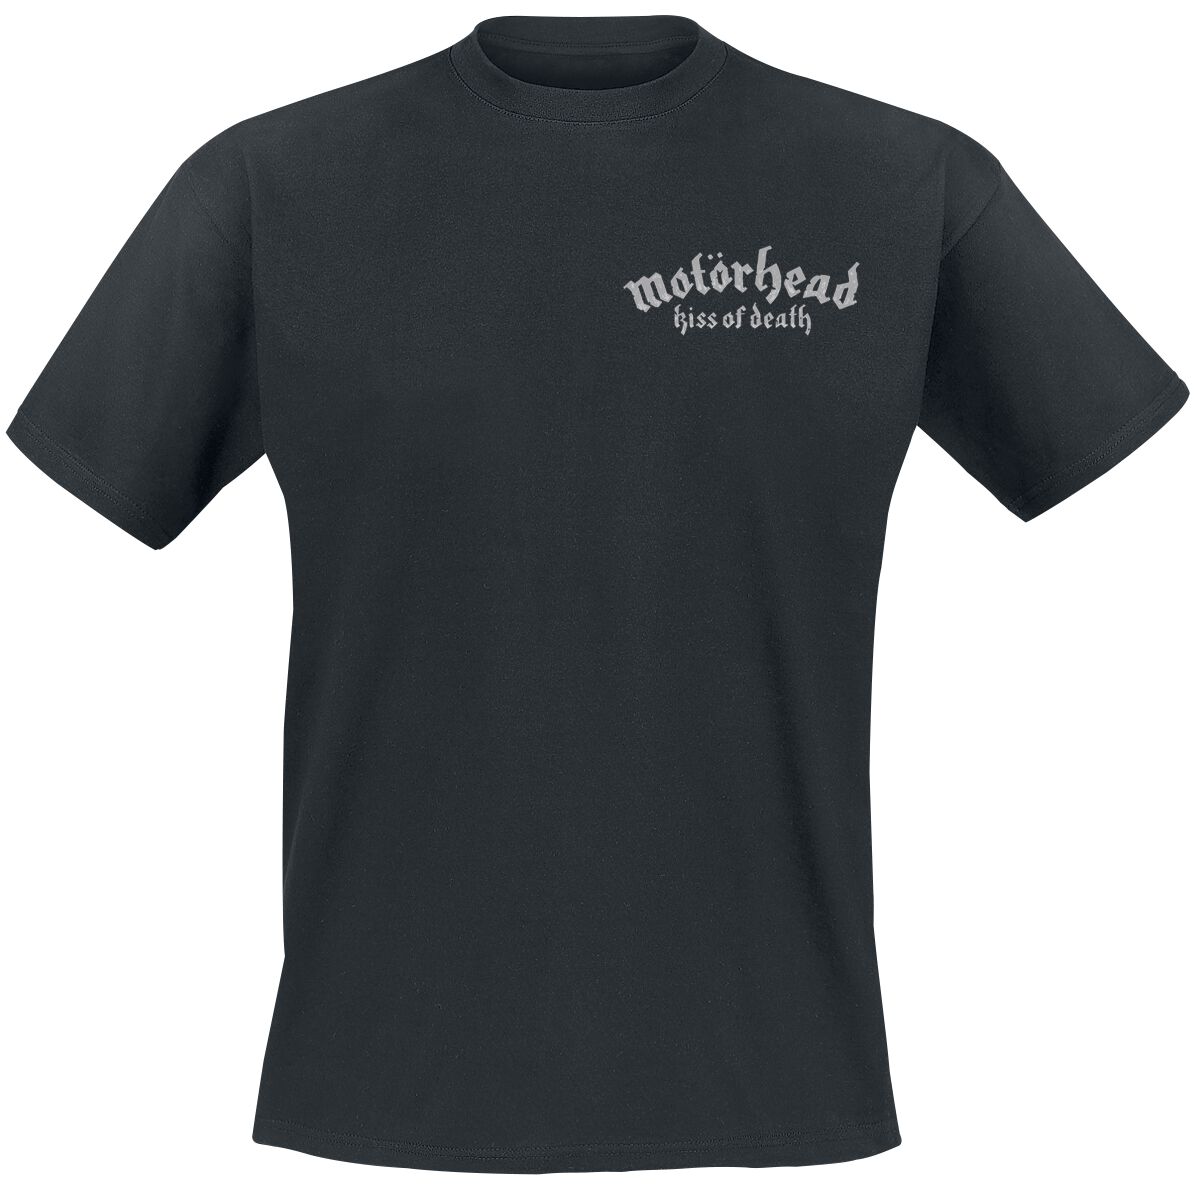 Motörhead T-Shirt - Kiss Of Death Bullet Circle V2 - S bis 4XL - für Männer - Größe XXL - schwarz  - Lizenziertes Merchandise!